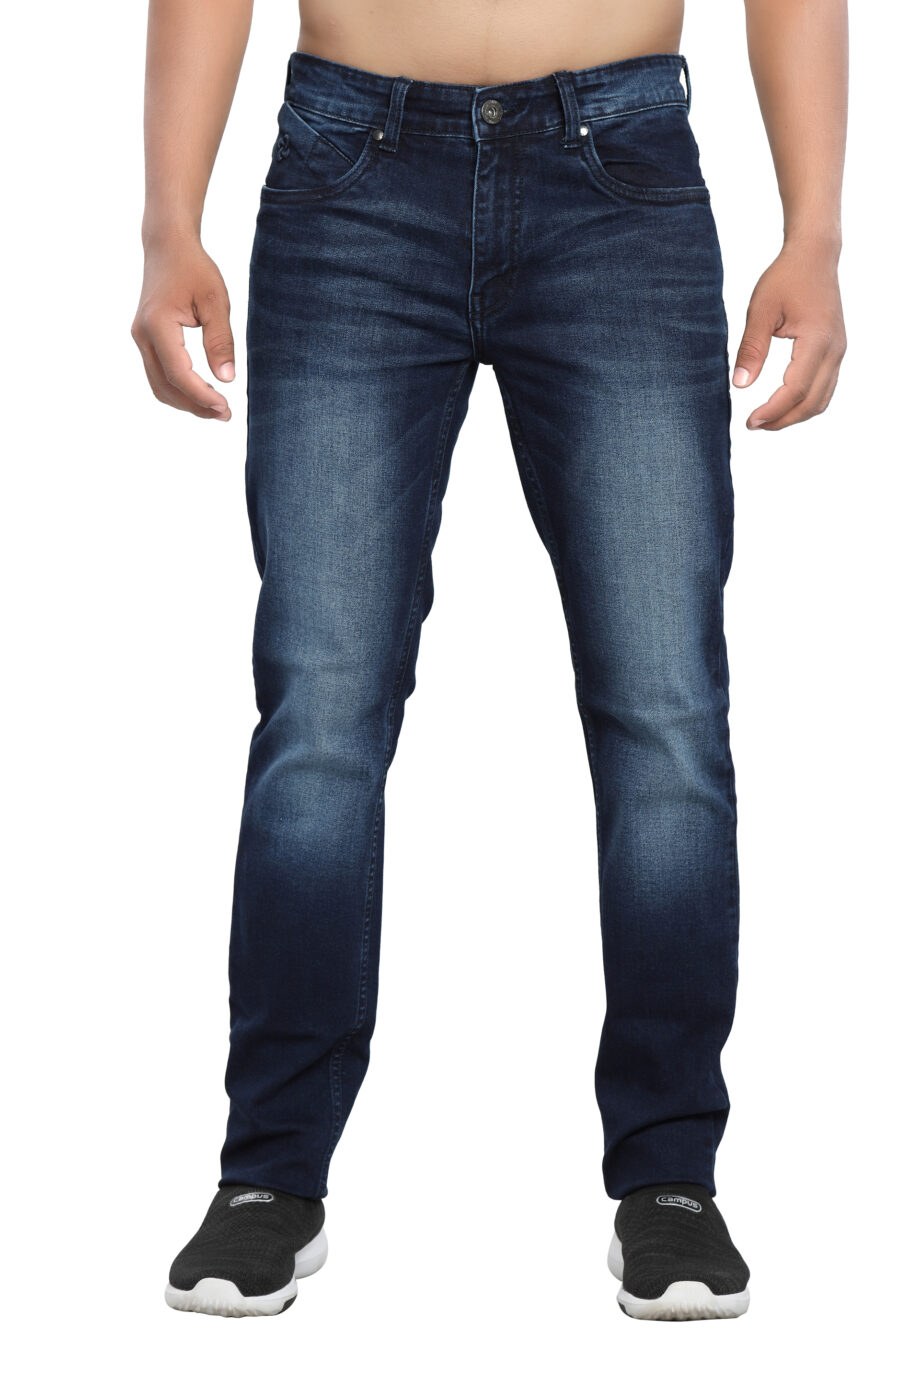 Stretchable branded Dark blue denim jeans for men